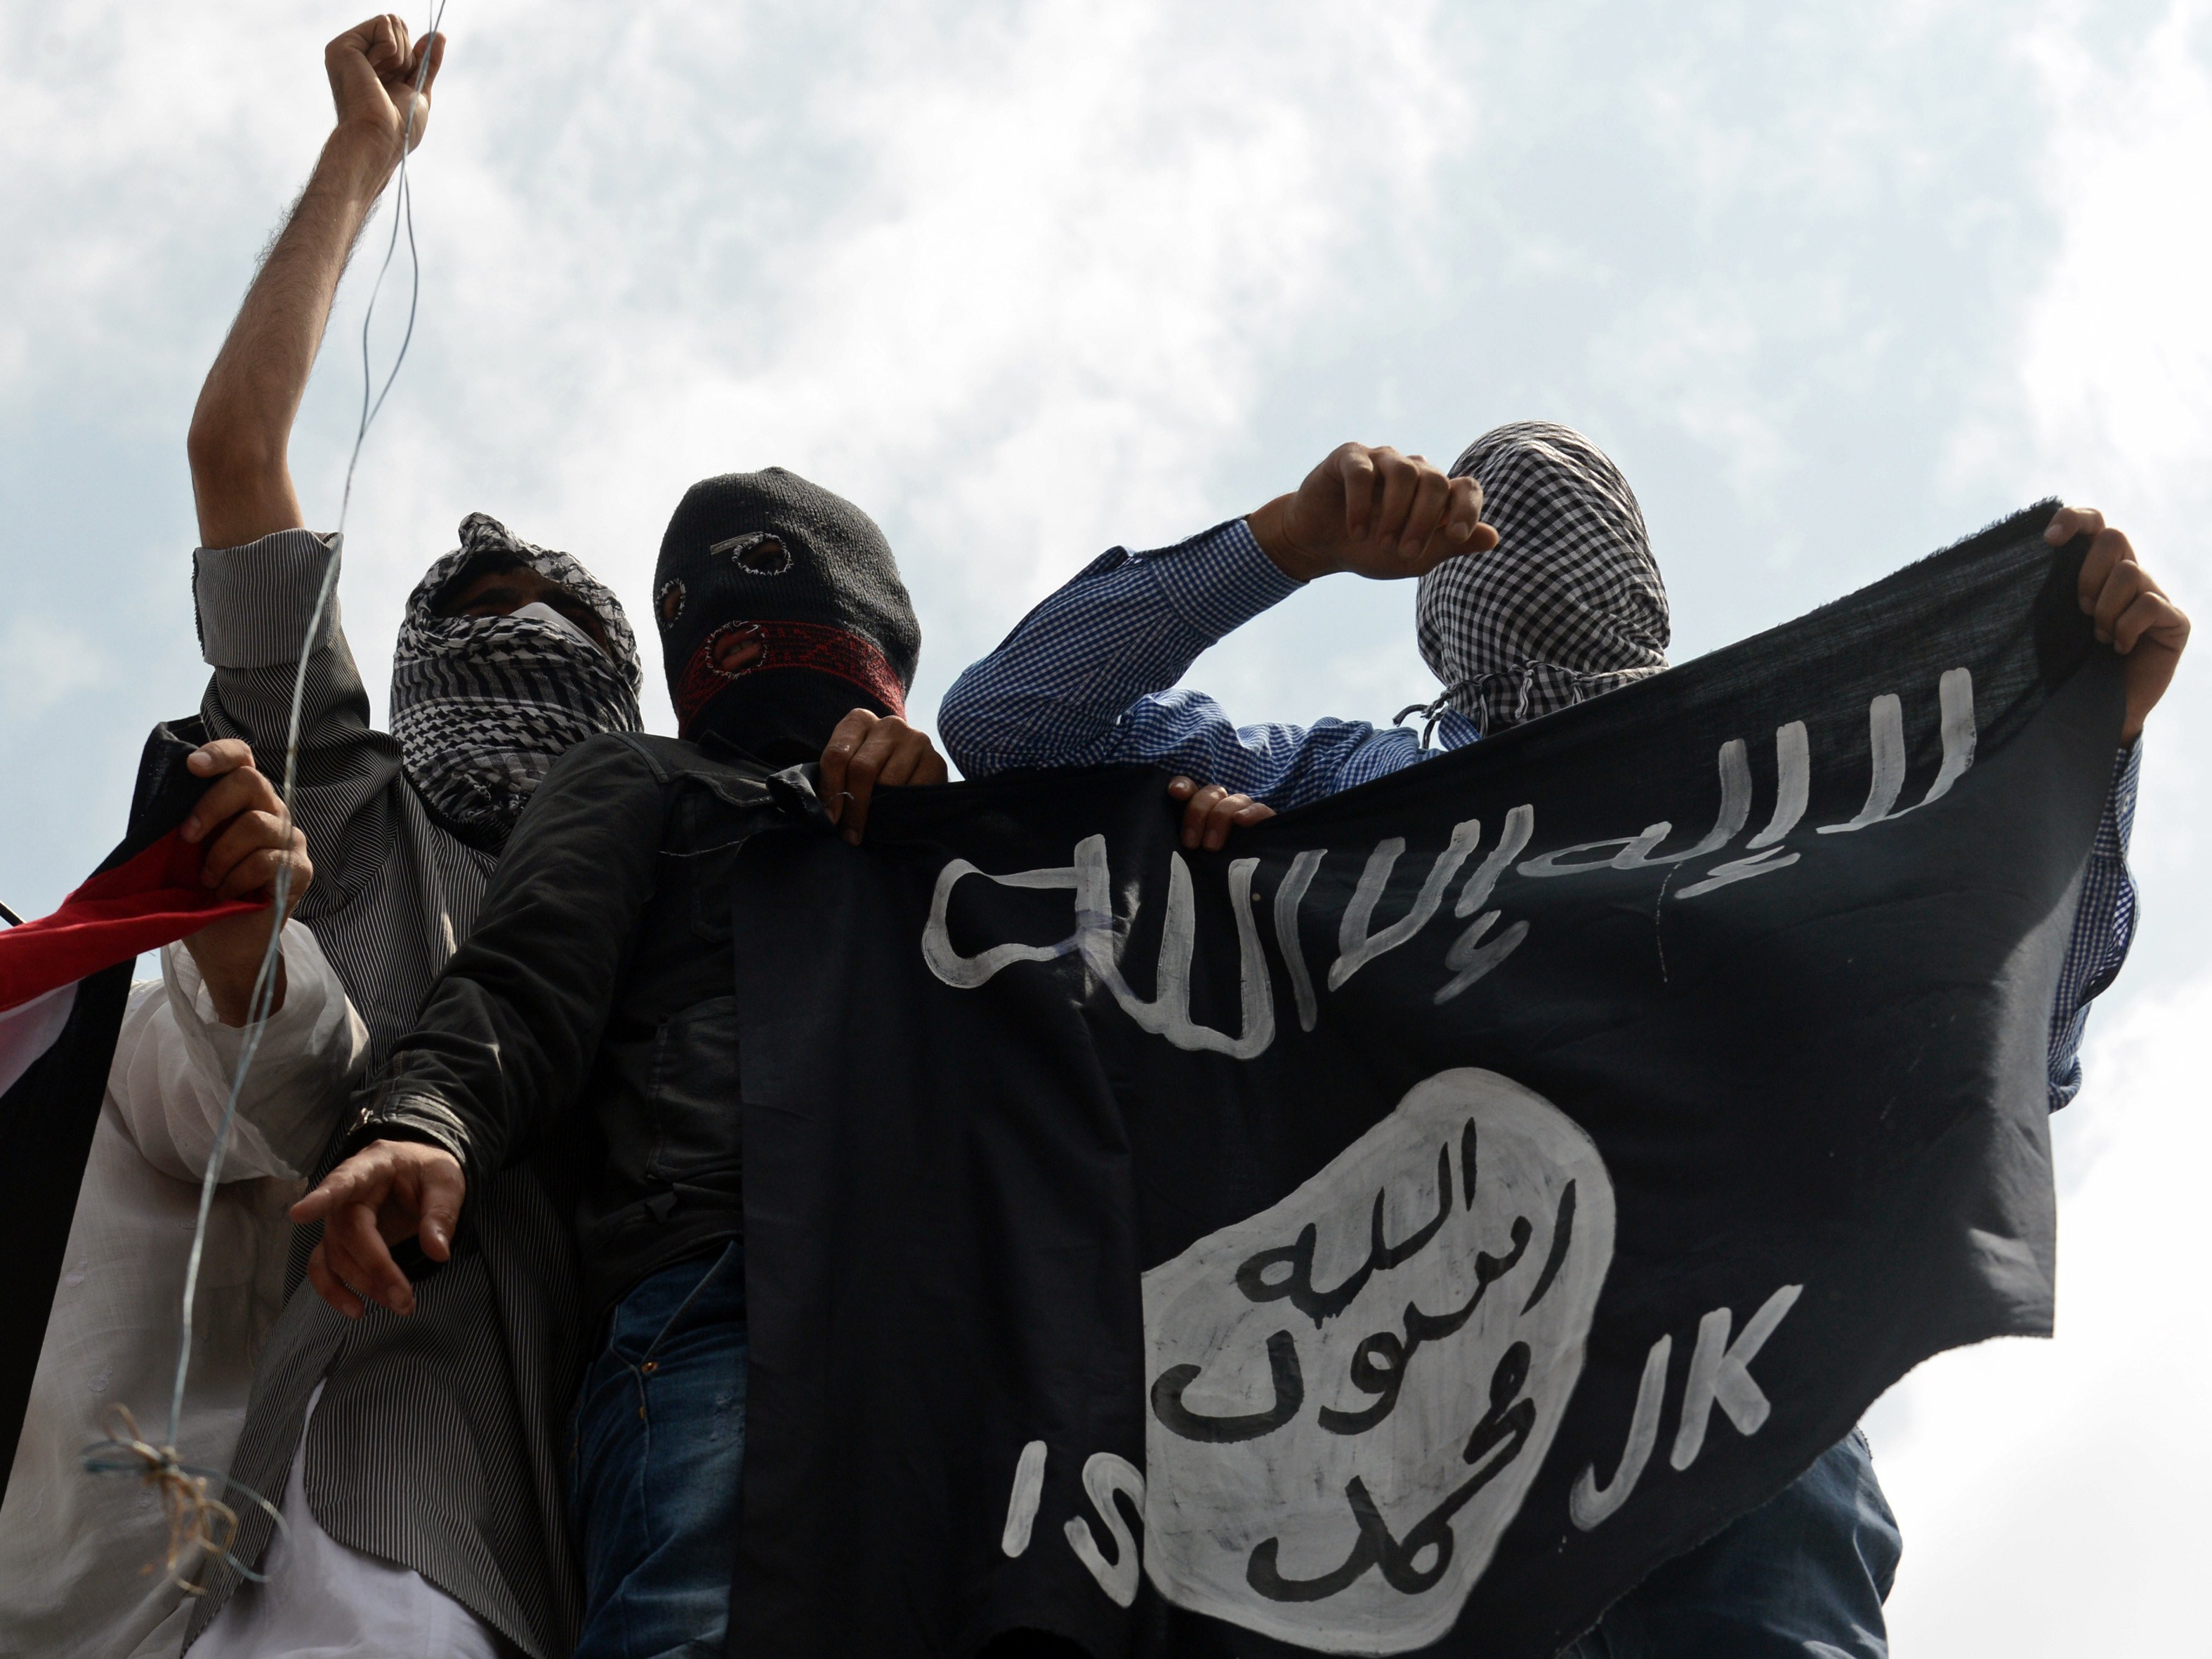 IS-nahe Agentur behauptet: Angreifer von Würzburg war Kämpfer des Islamischen Staates